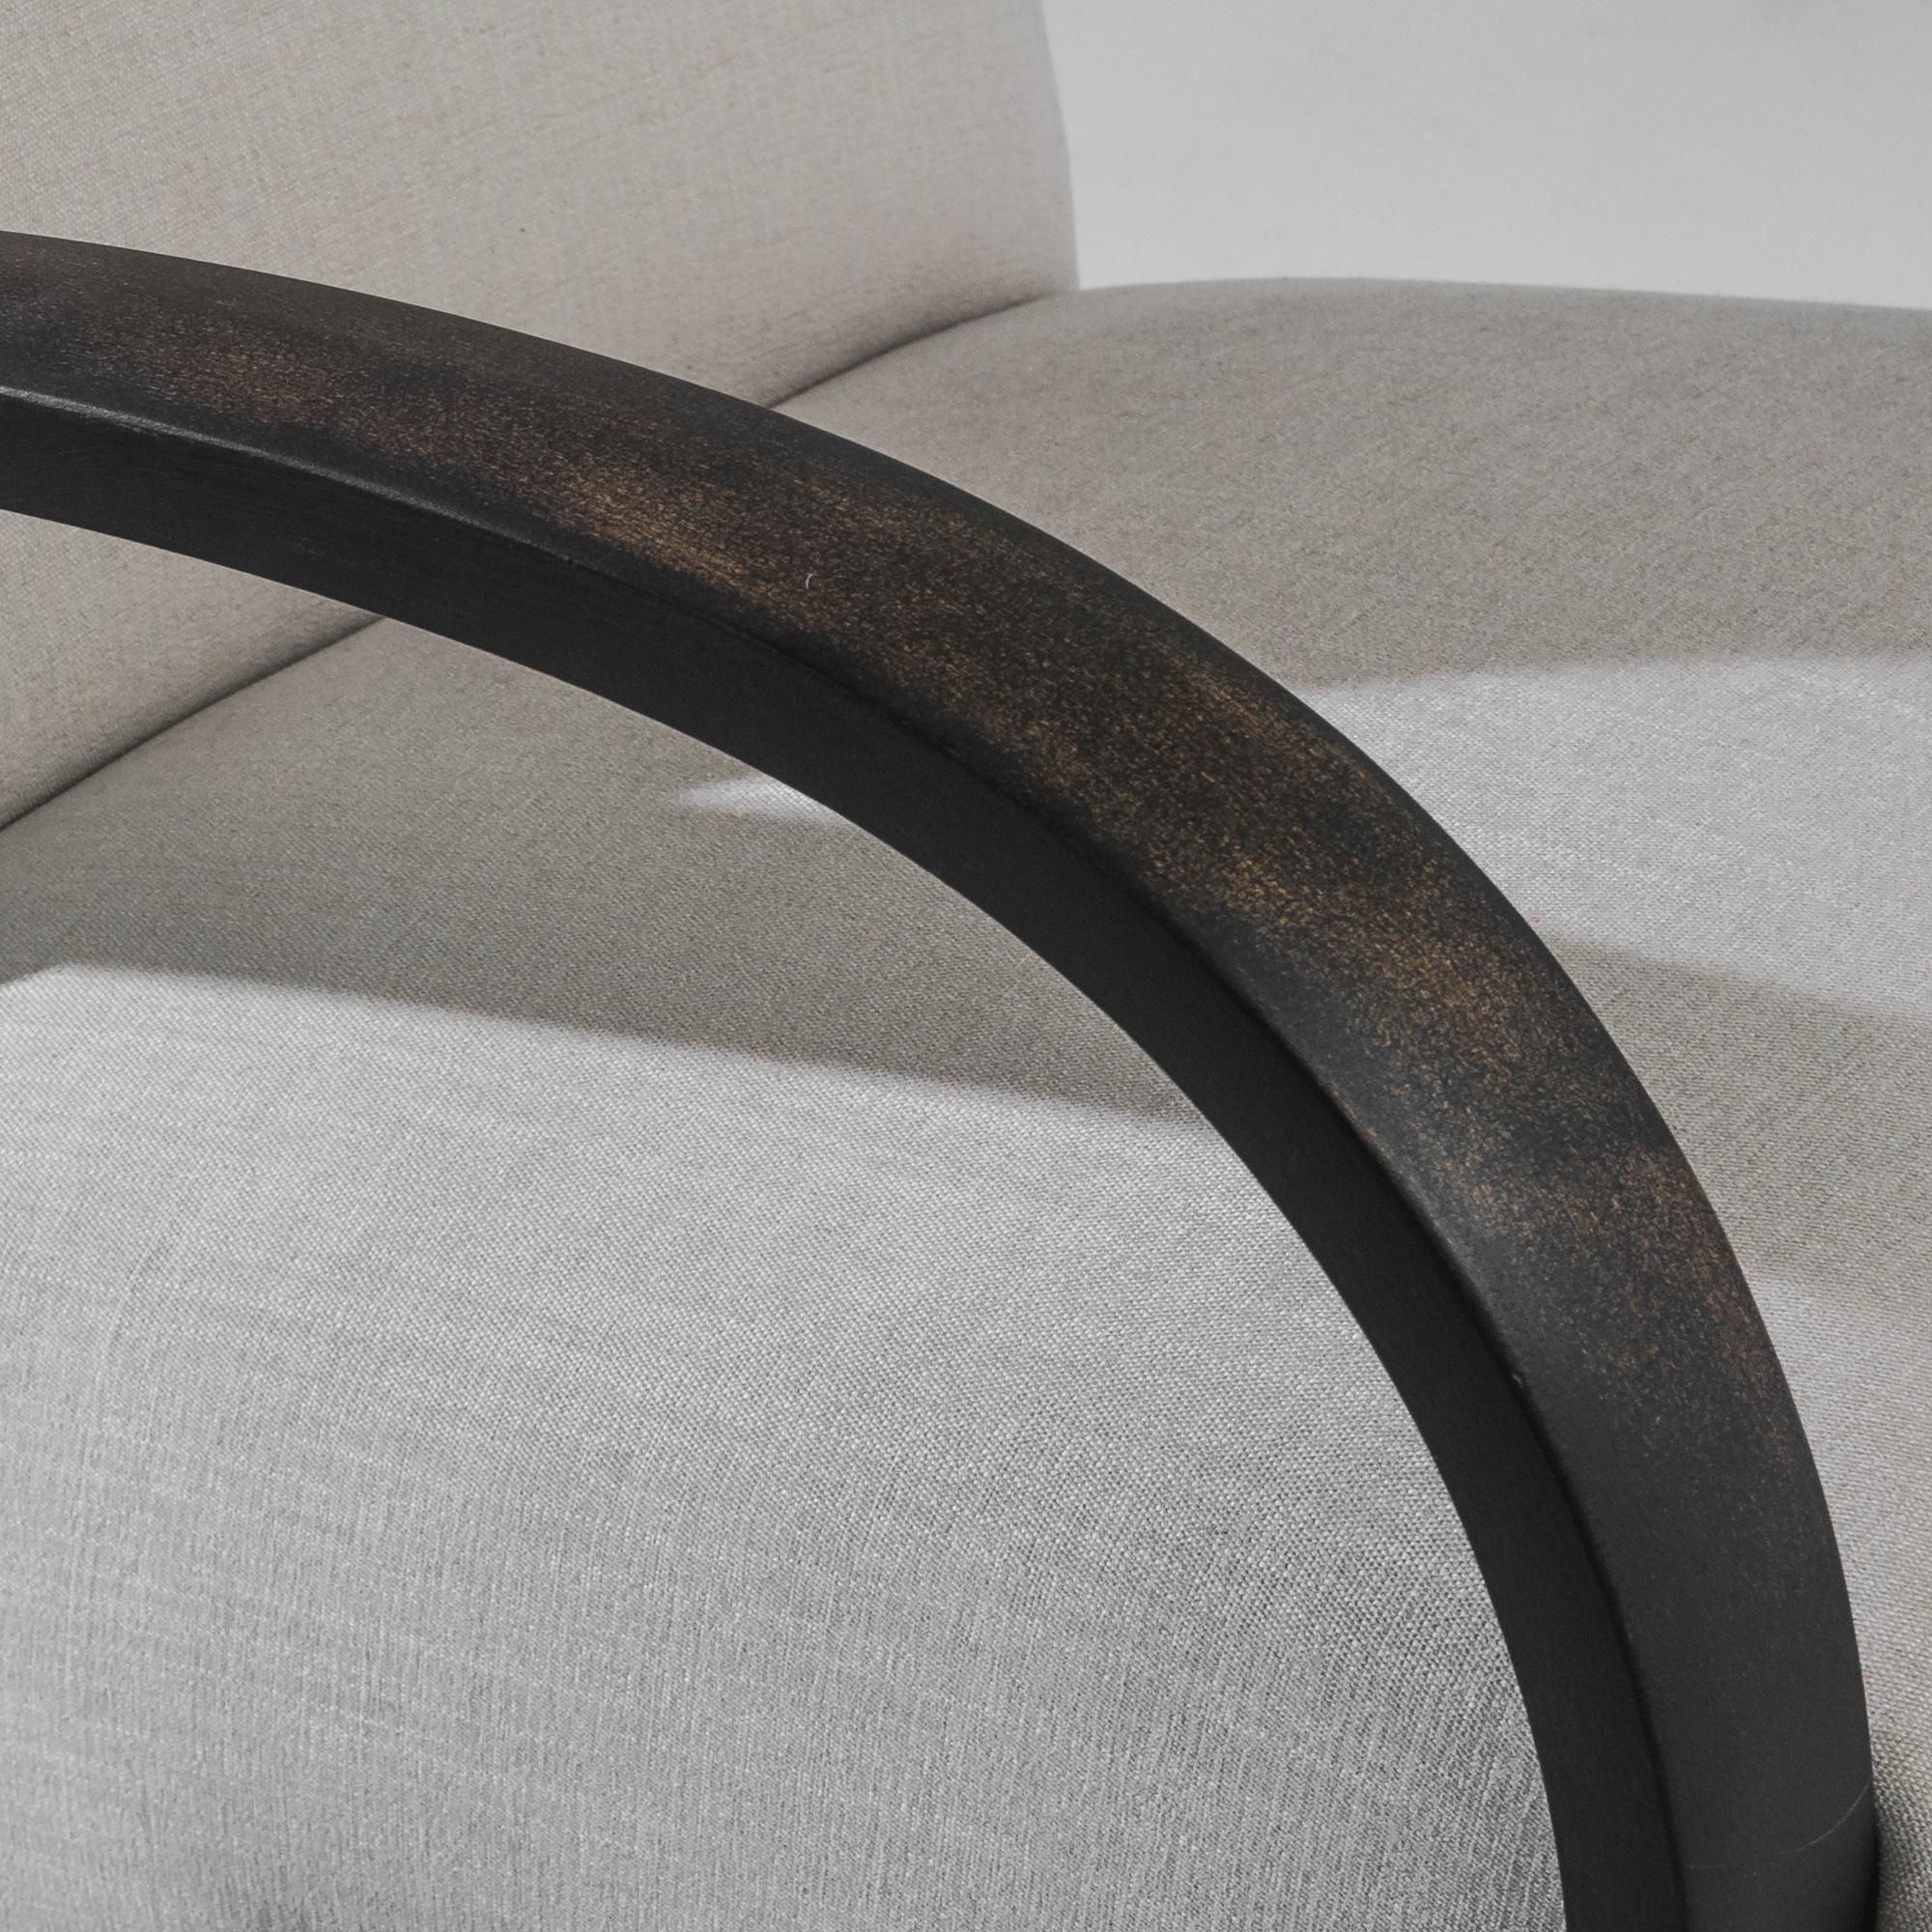 Dieser tschechische Sessel aus den 1930er Jahren, entworfen von dem berühmten J. Halabala, ist ein Meisterwerk des Vintage-Designs, das Funktionalität mit einer kunstvollen Ästhetik verbindet. Die eleganten Kurven des Stuhls und die kühnen schwarzen